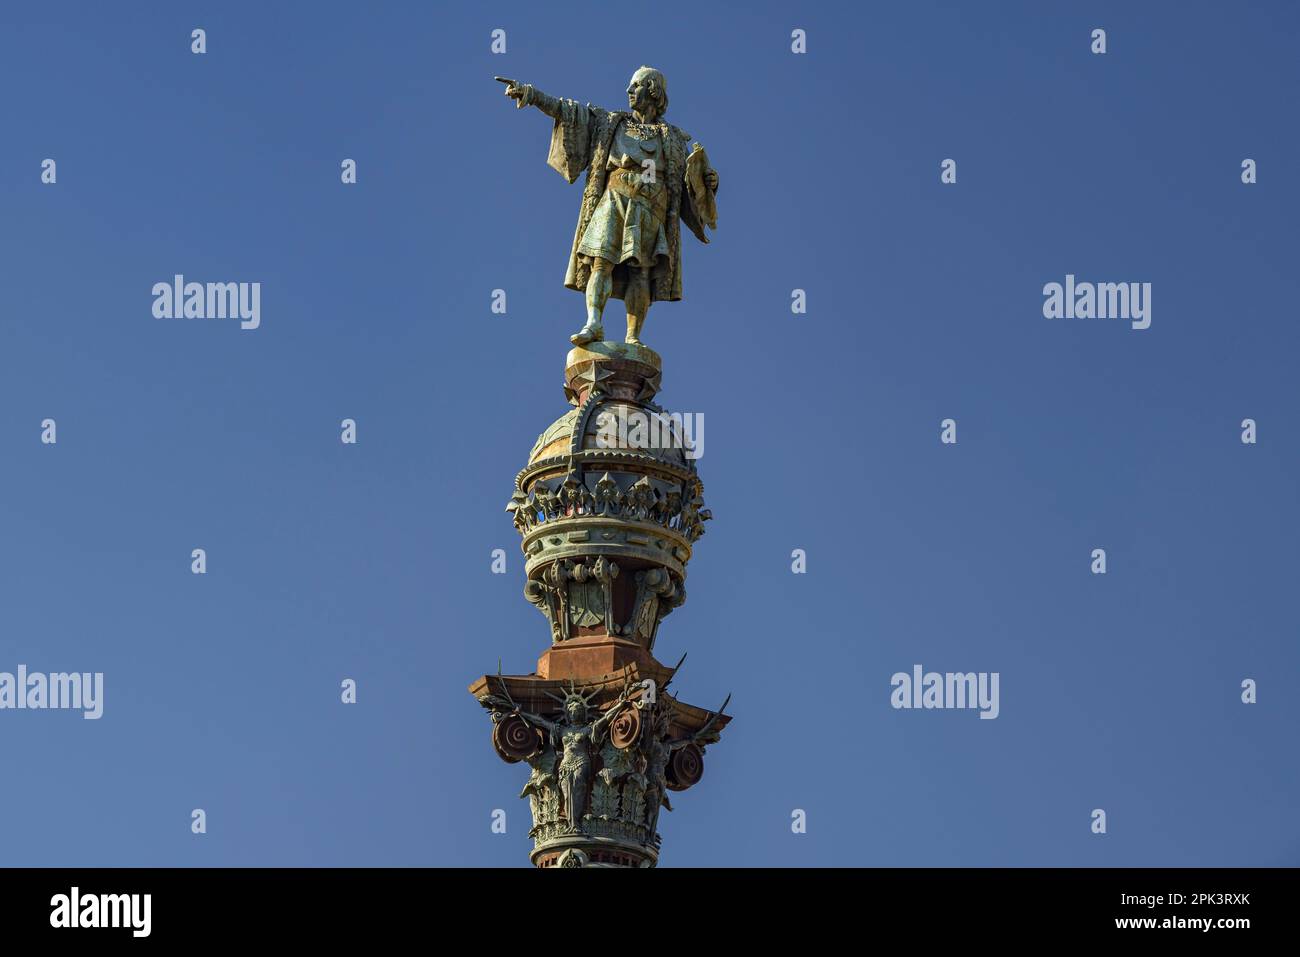 Sculpture of Christopher Columbus at the Columbus Monument in Barcelona (Catalonia, Spain) ESP: Escultura de Cristóbal Colón en el monumento a Colón Stock Photo